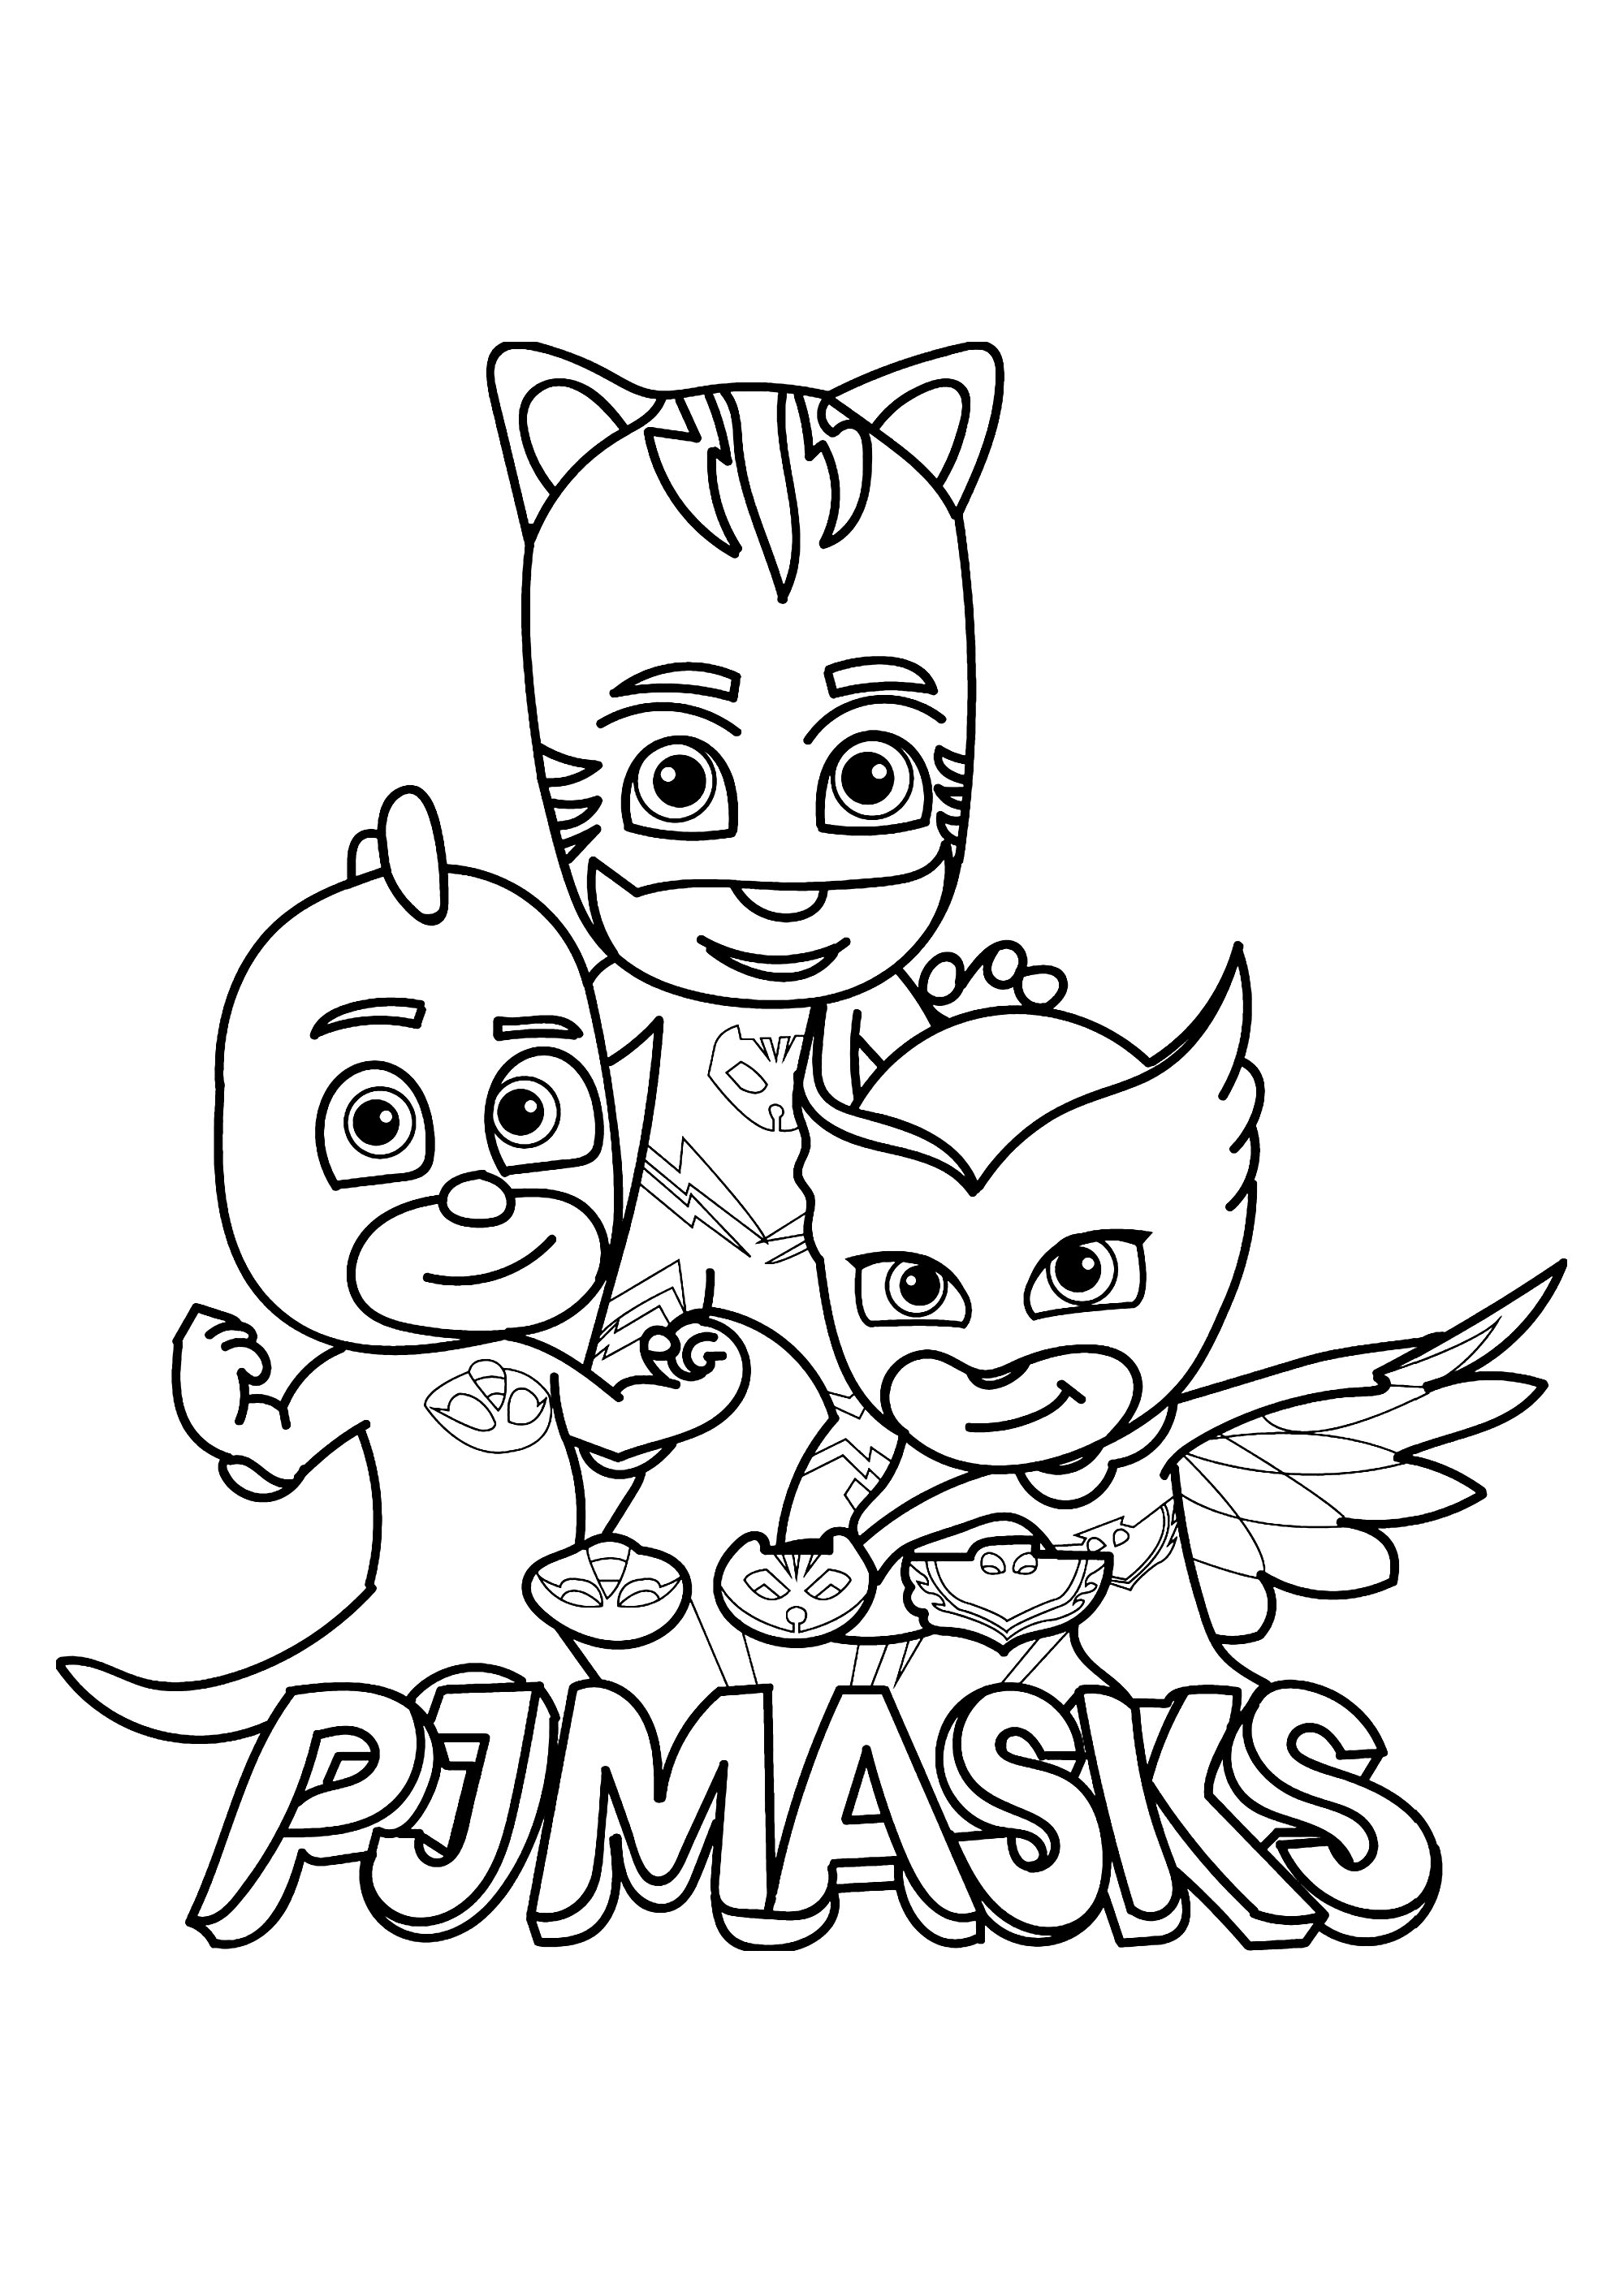 Pj masks for kids - PJ Masks Kids Coloring Pages